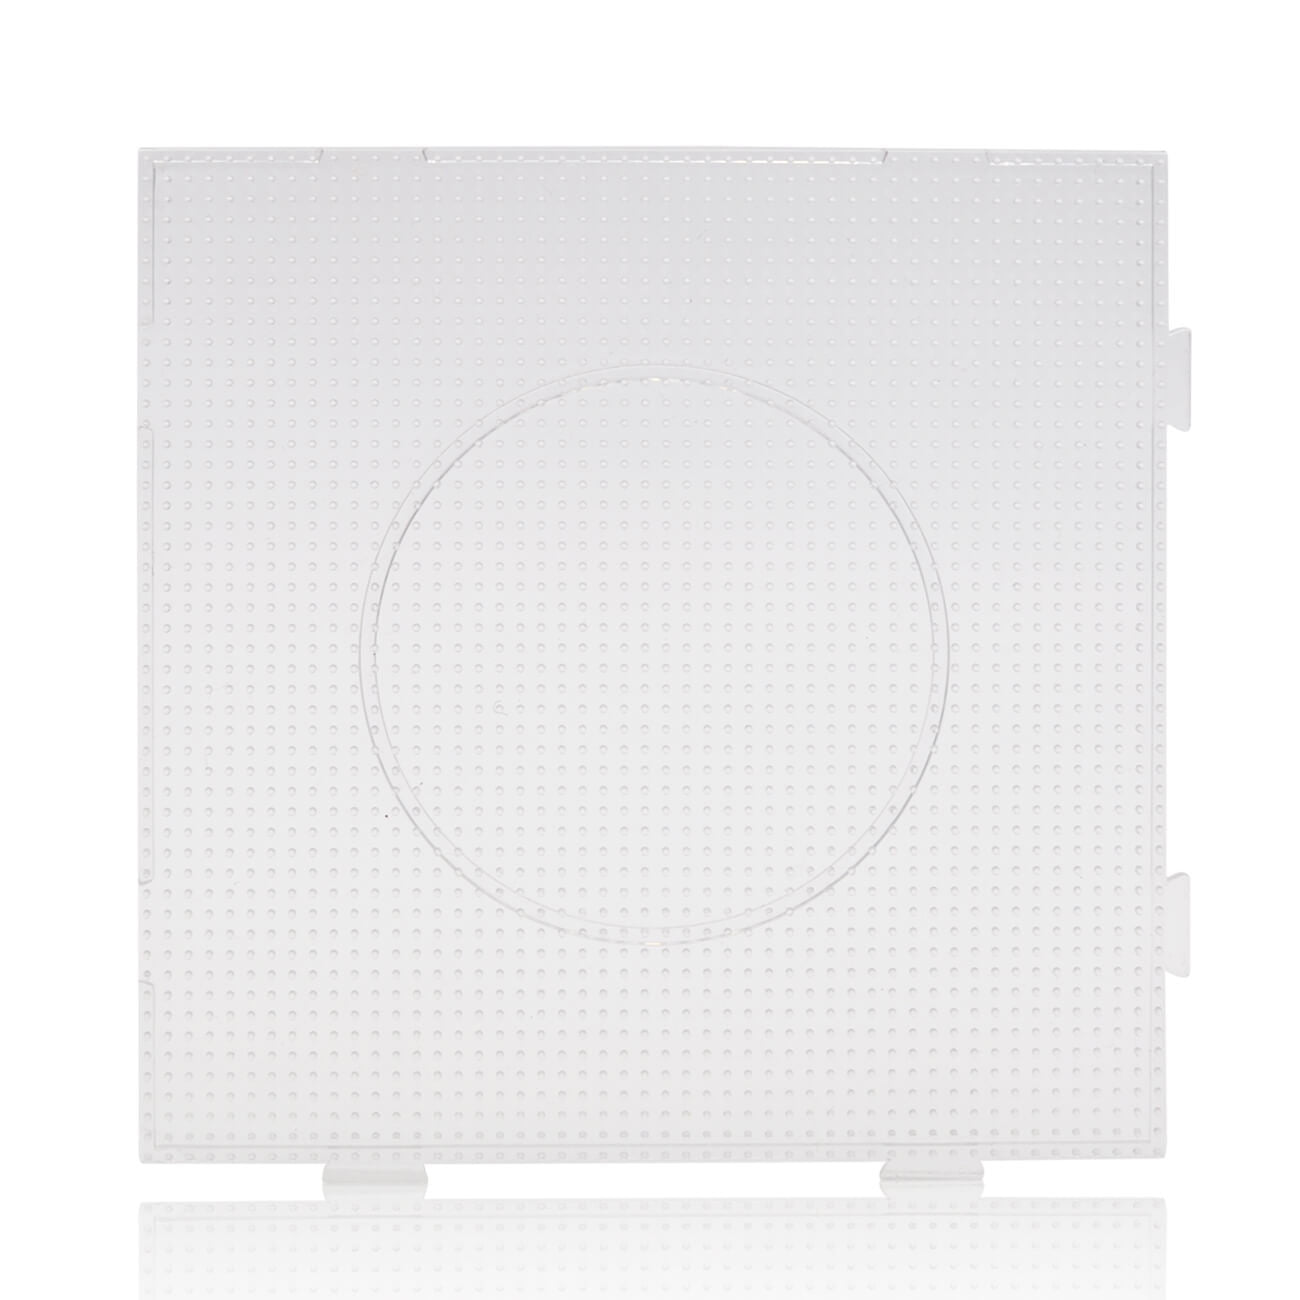 Artkal groot vierkant ophangbord voor mini 2.6 mm kralen -BCP01